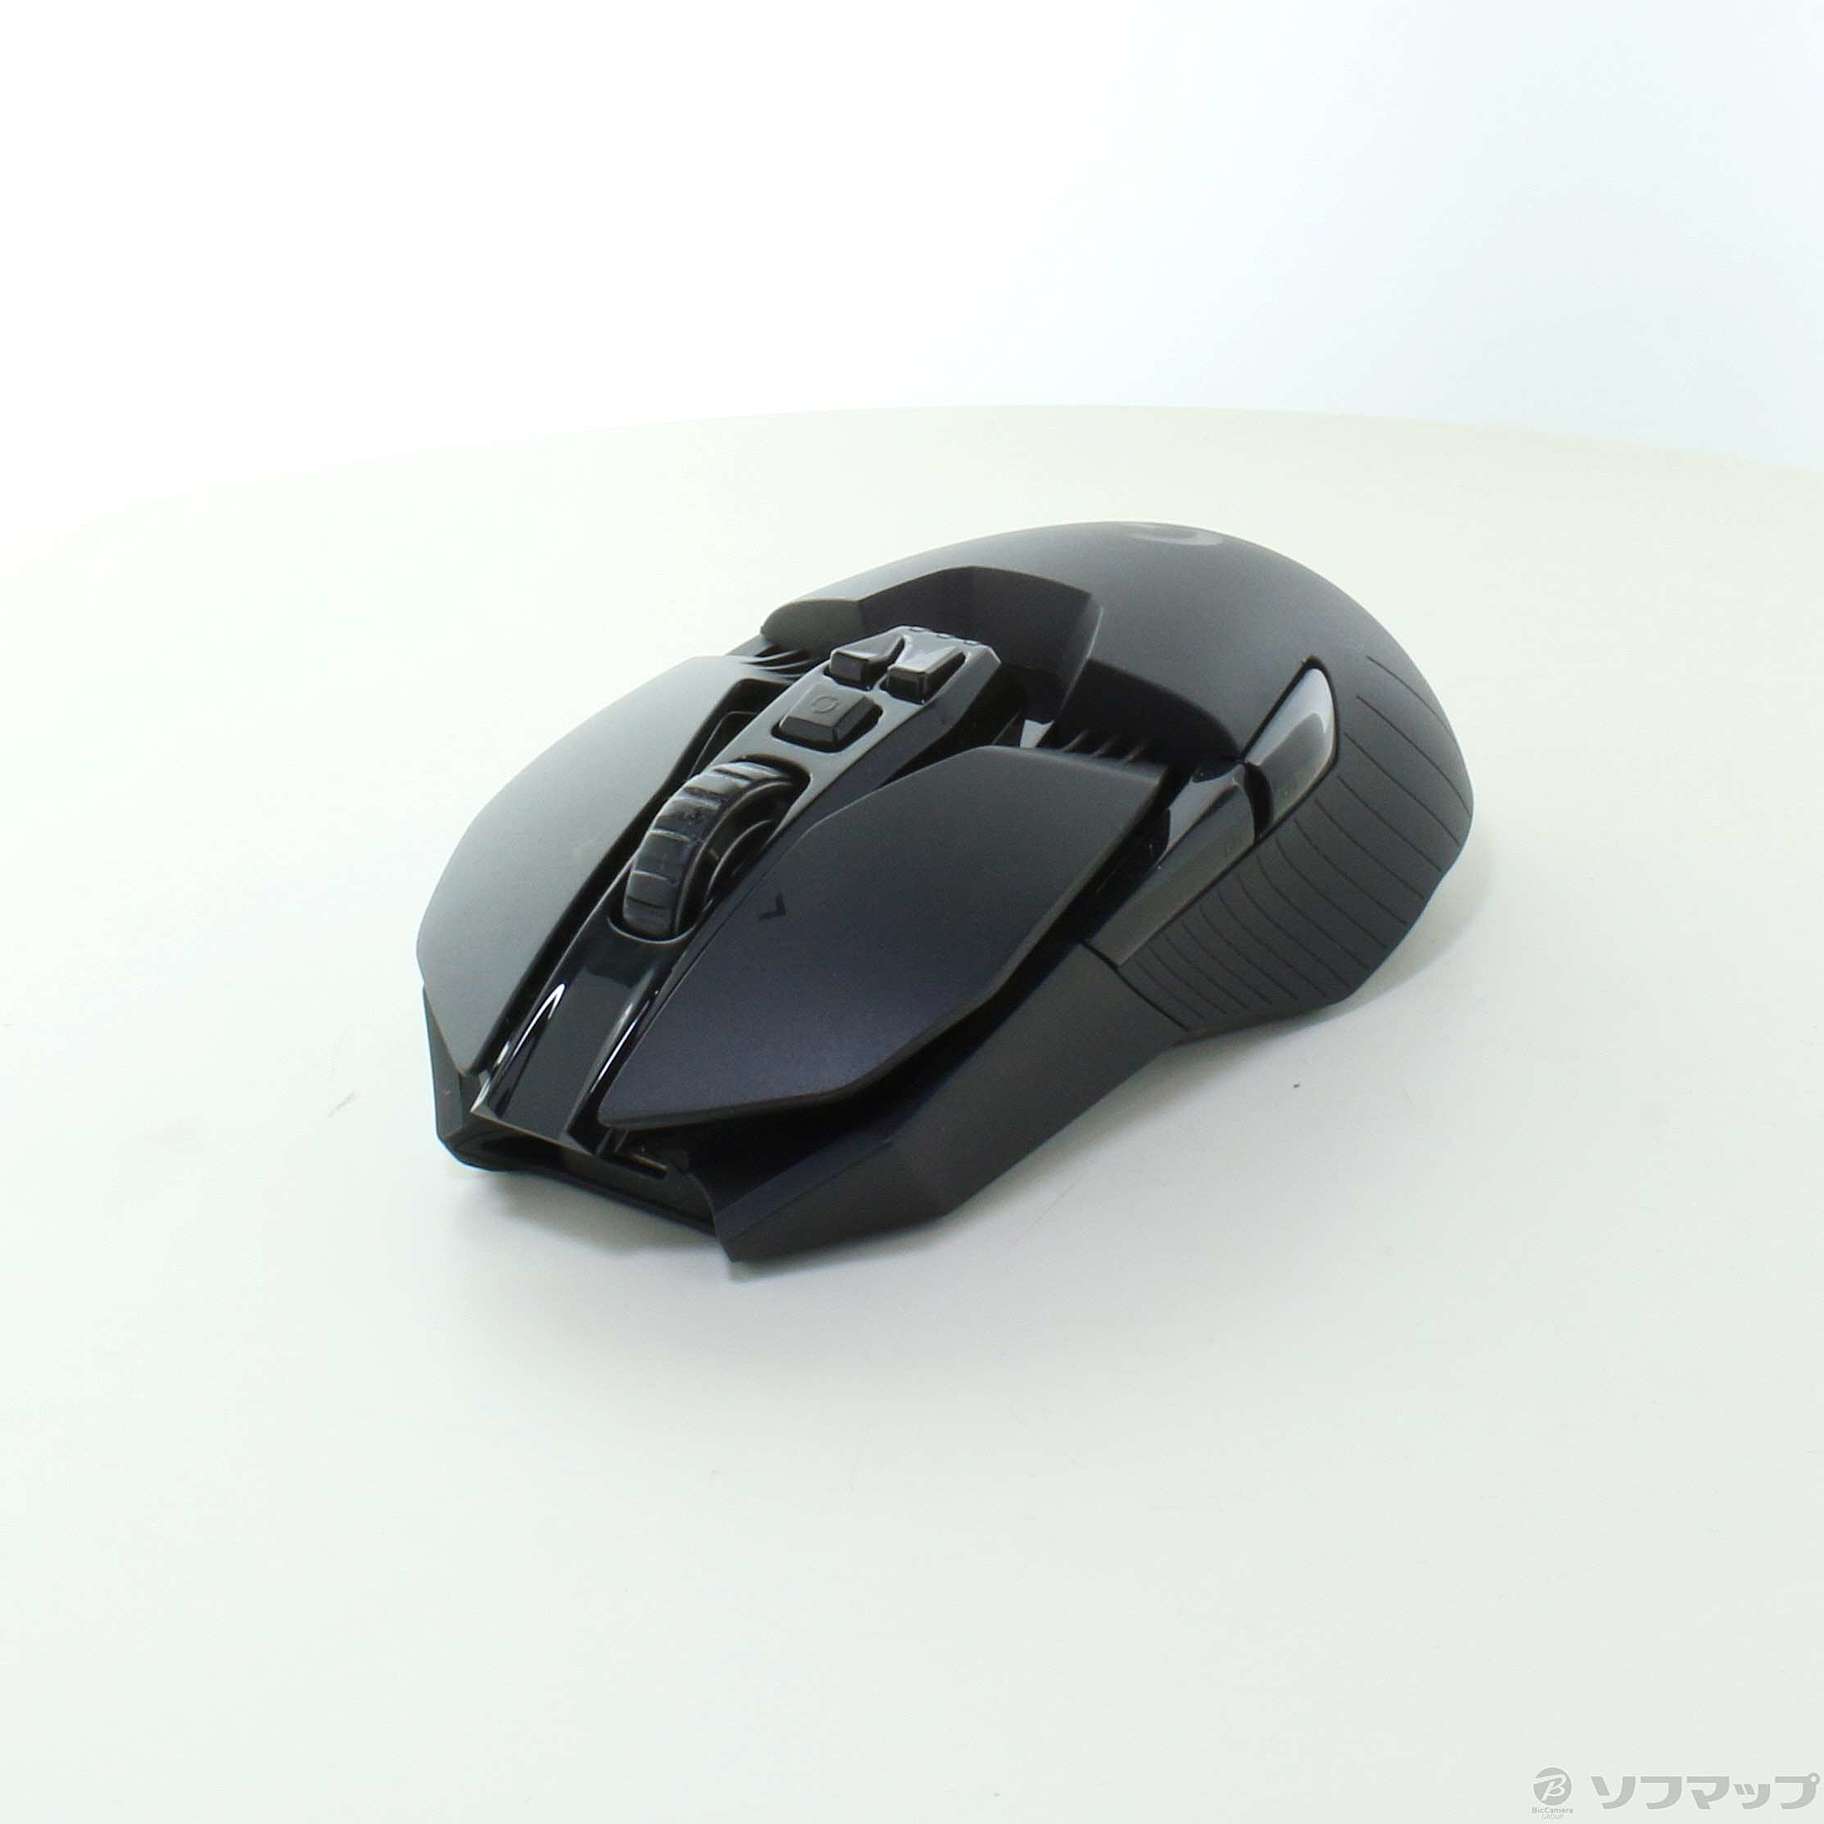 ロジクール G903 LIGHTSPEED ワイヤレス ゲーミング マウス